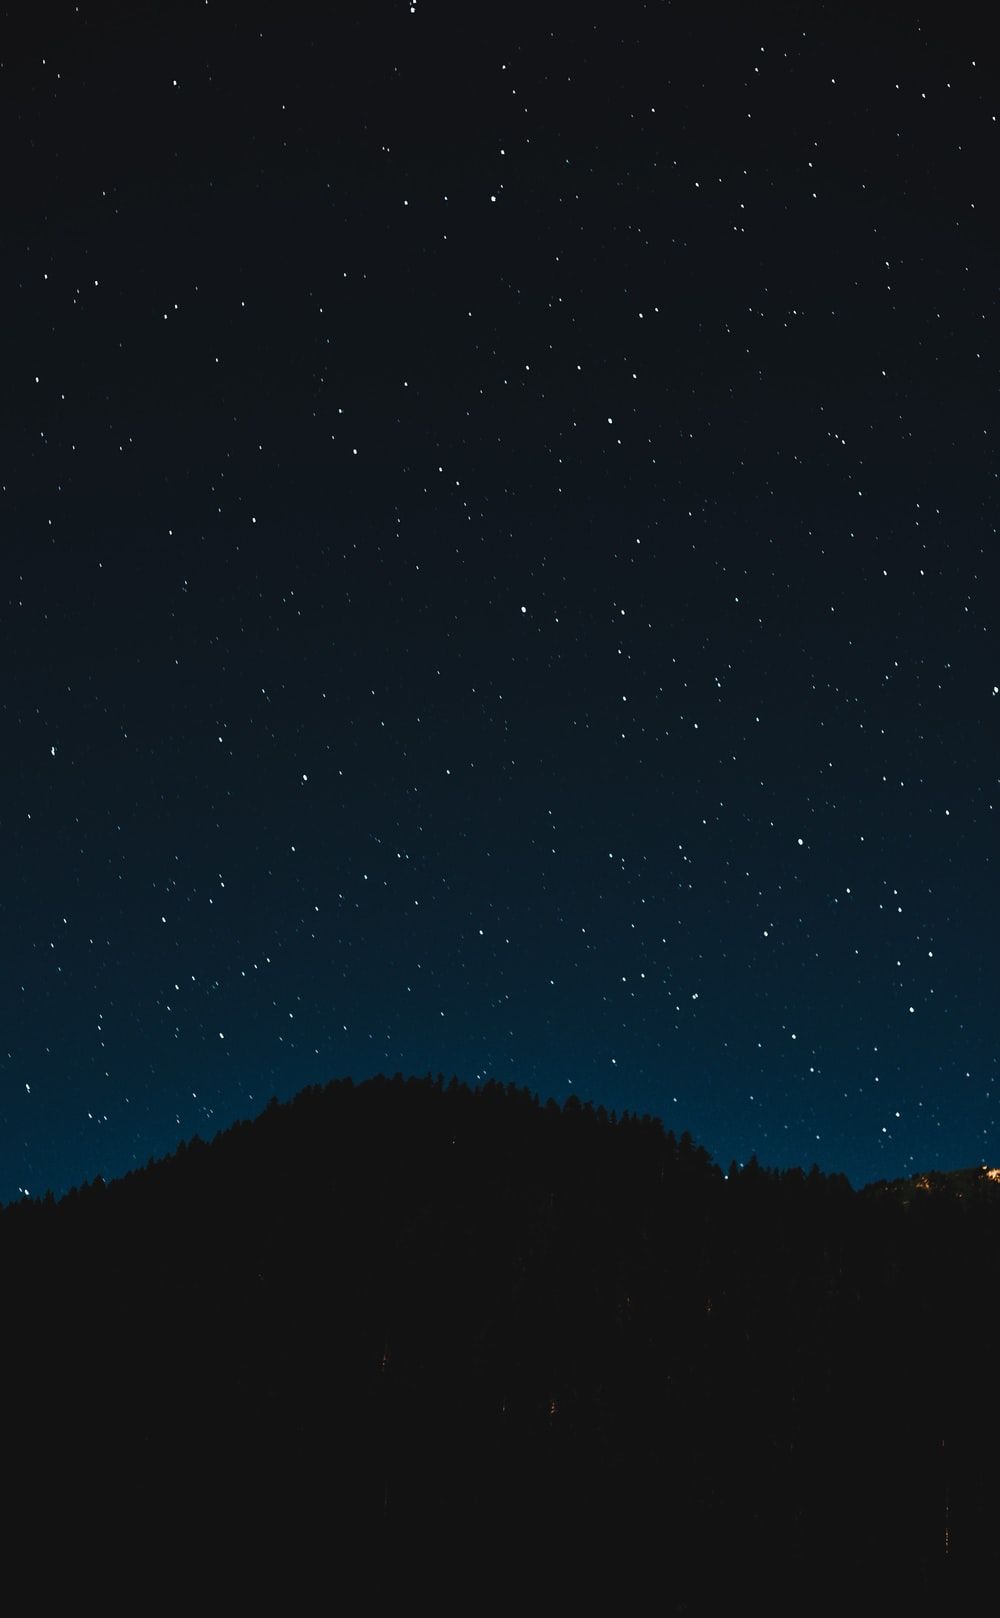 Night Sky Wallpaper: Free HD Download [HQ]